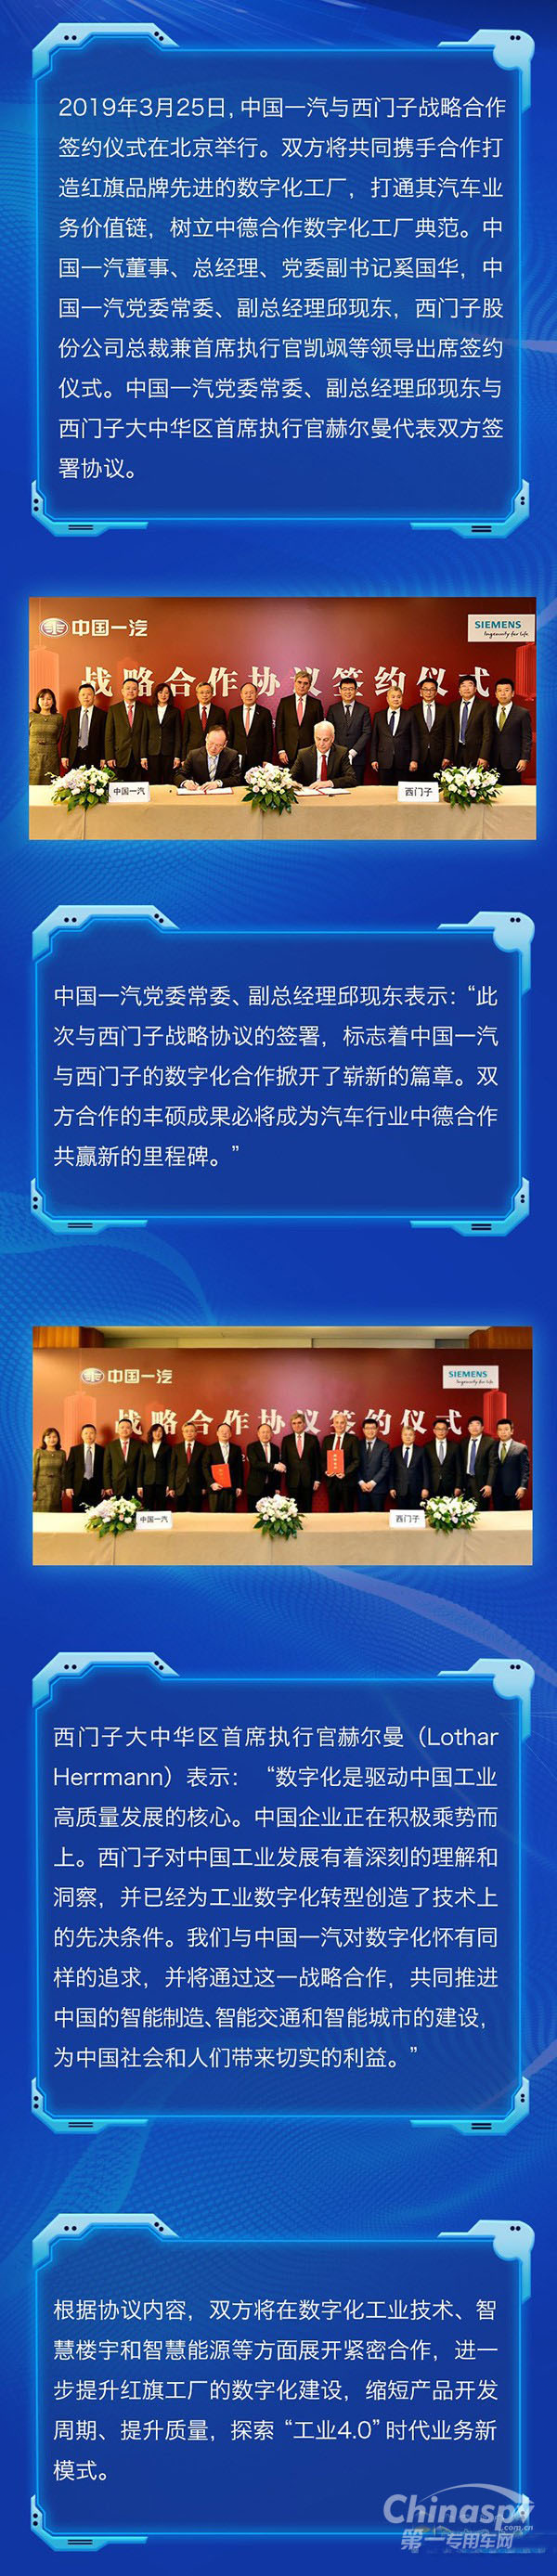 中国一汽与西门子签署数字化合作协议 